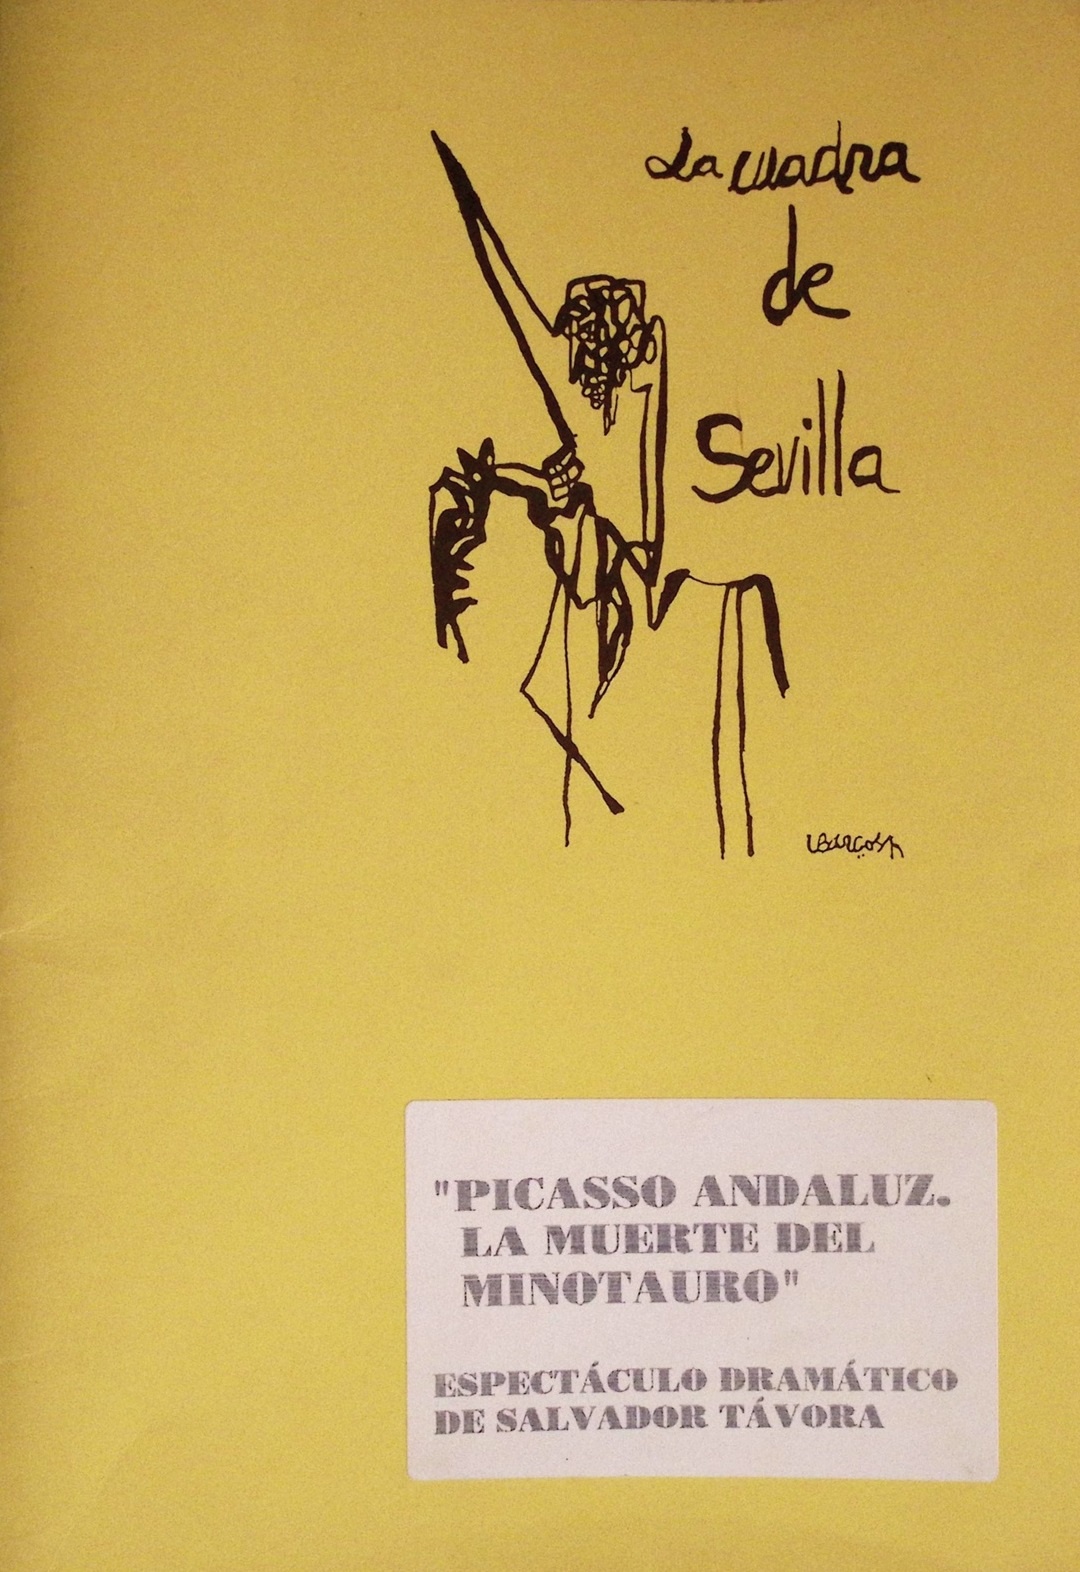 "Picasso andaluz. La muerte del Minotauro". Espectáculo dramático de Salvador Távora. La Cuadra de Sevilla [Sumario]